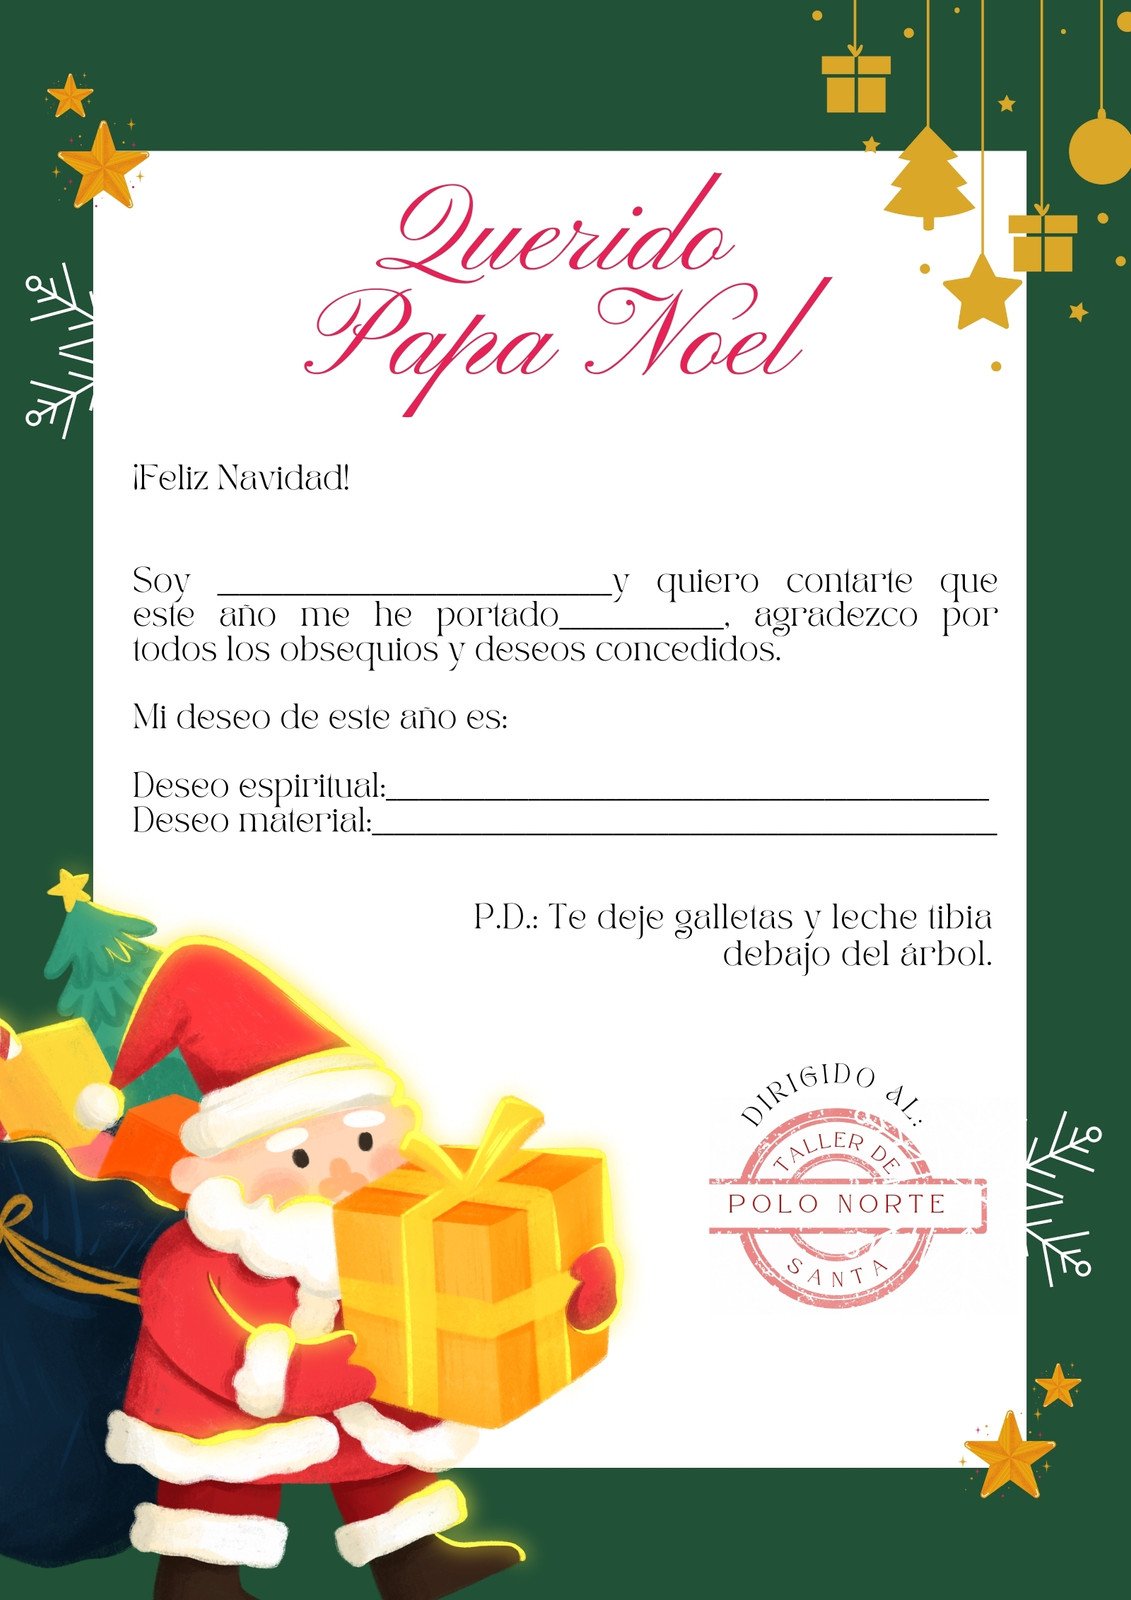 Plantillas de cartas para Papá Noel gratis para editar | Canva